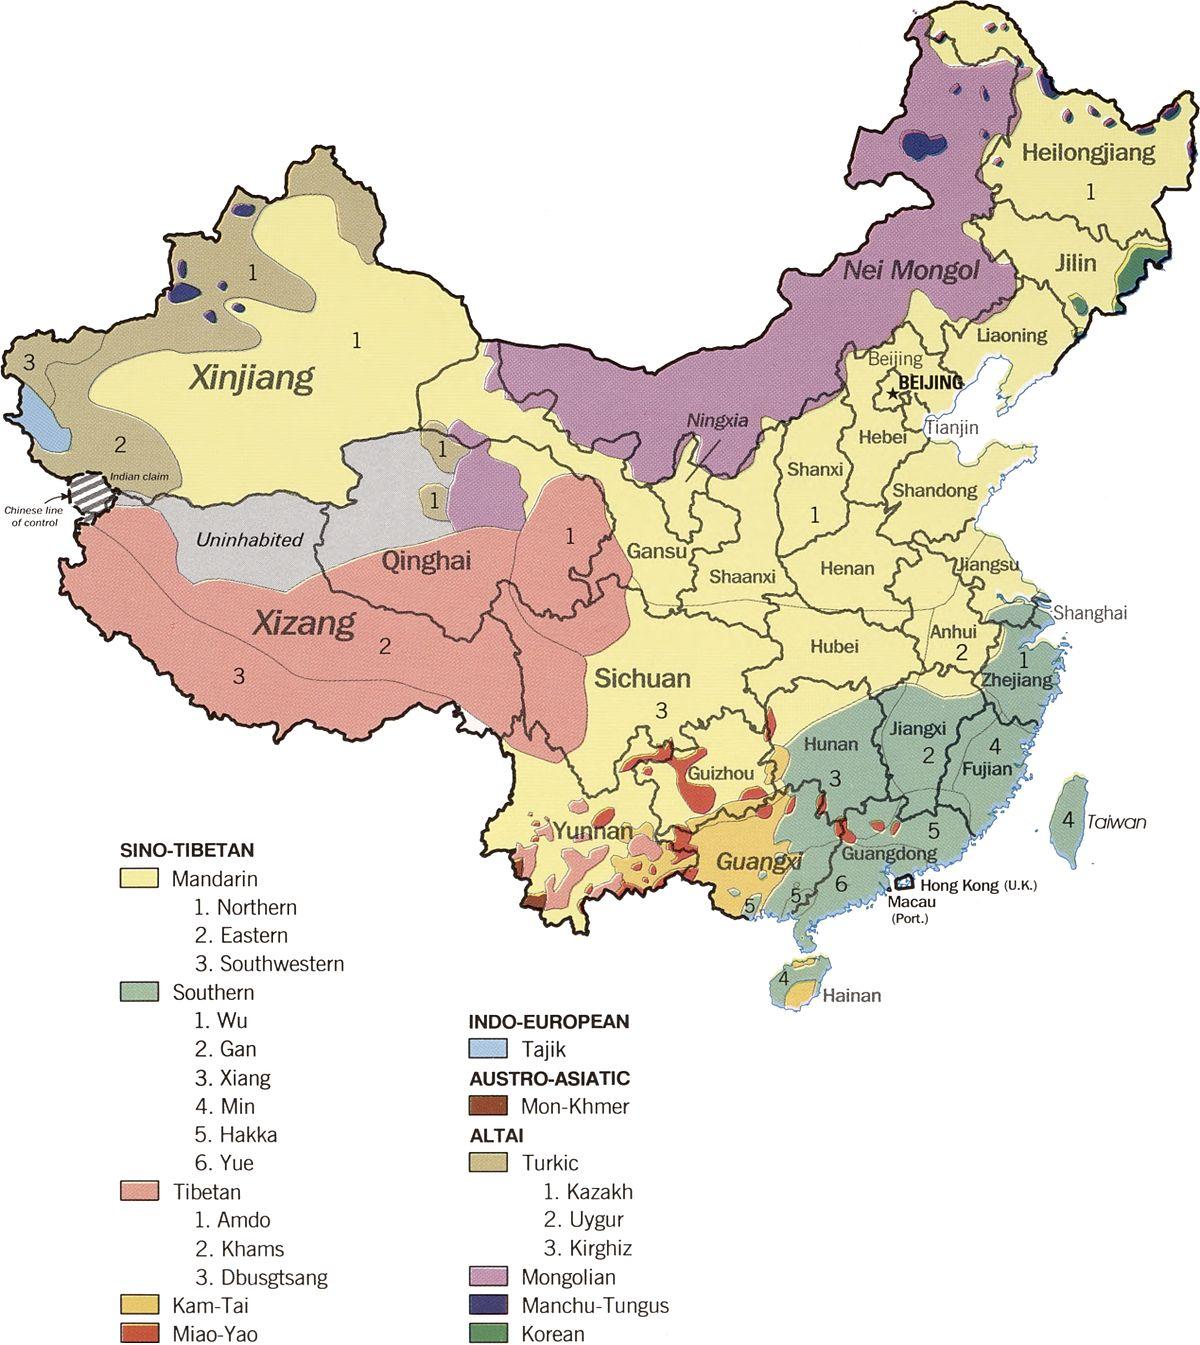 Kiinan kielen kartta - Kieli kartta Kiina (Itä-Aasia - Aasia)